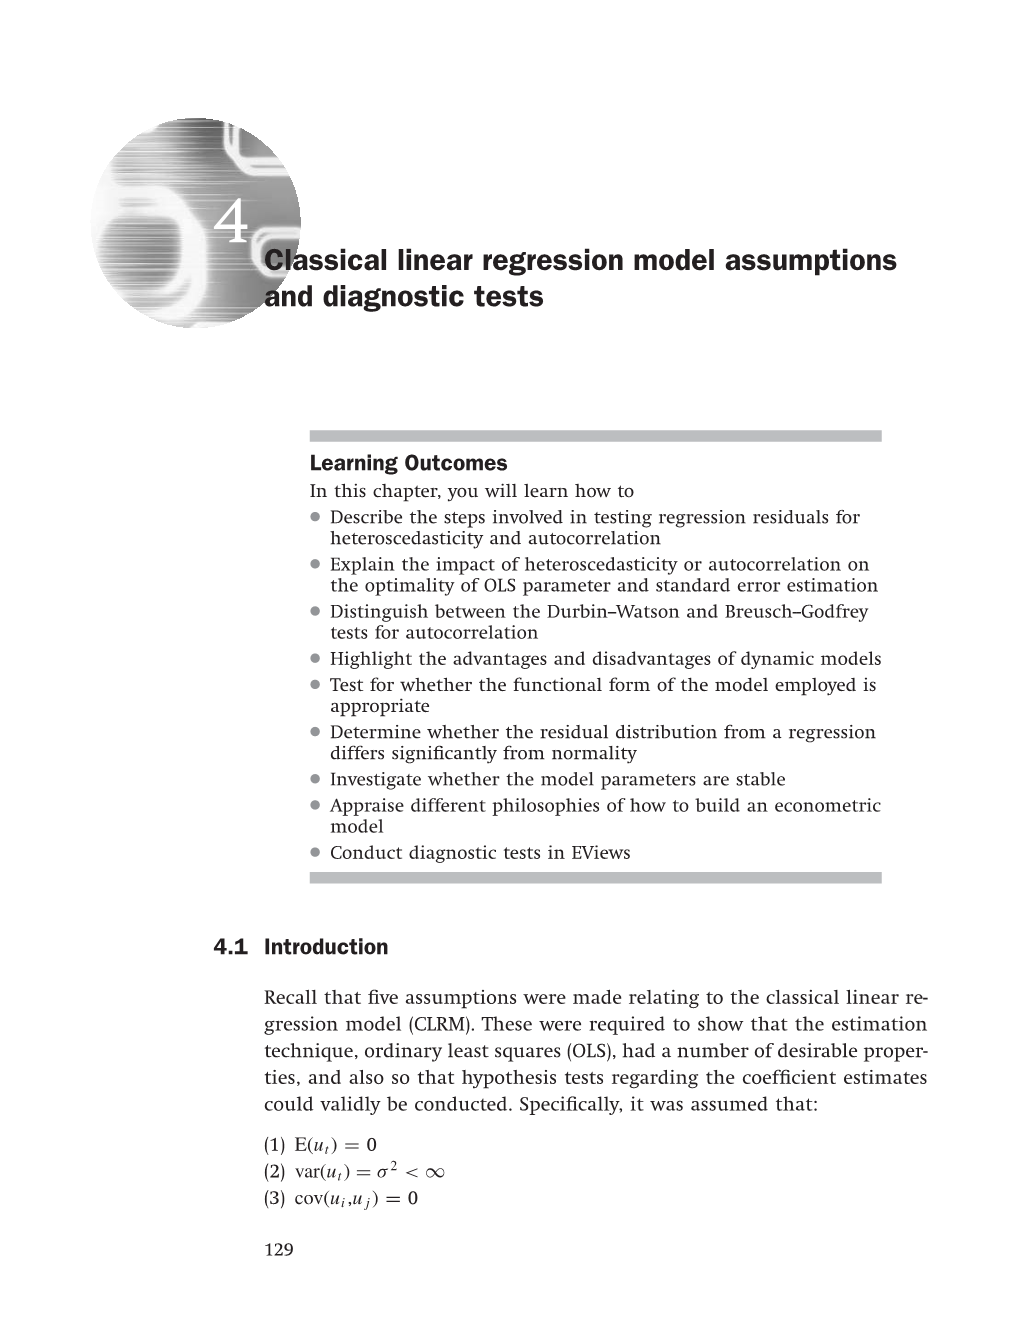 Classical Linear Regression Model Assumptions and Diagnostic Tests